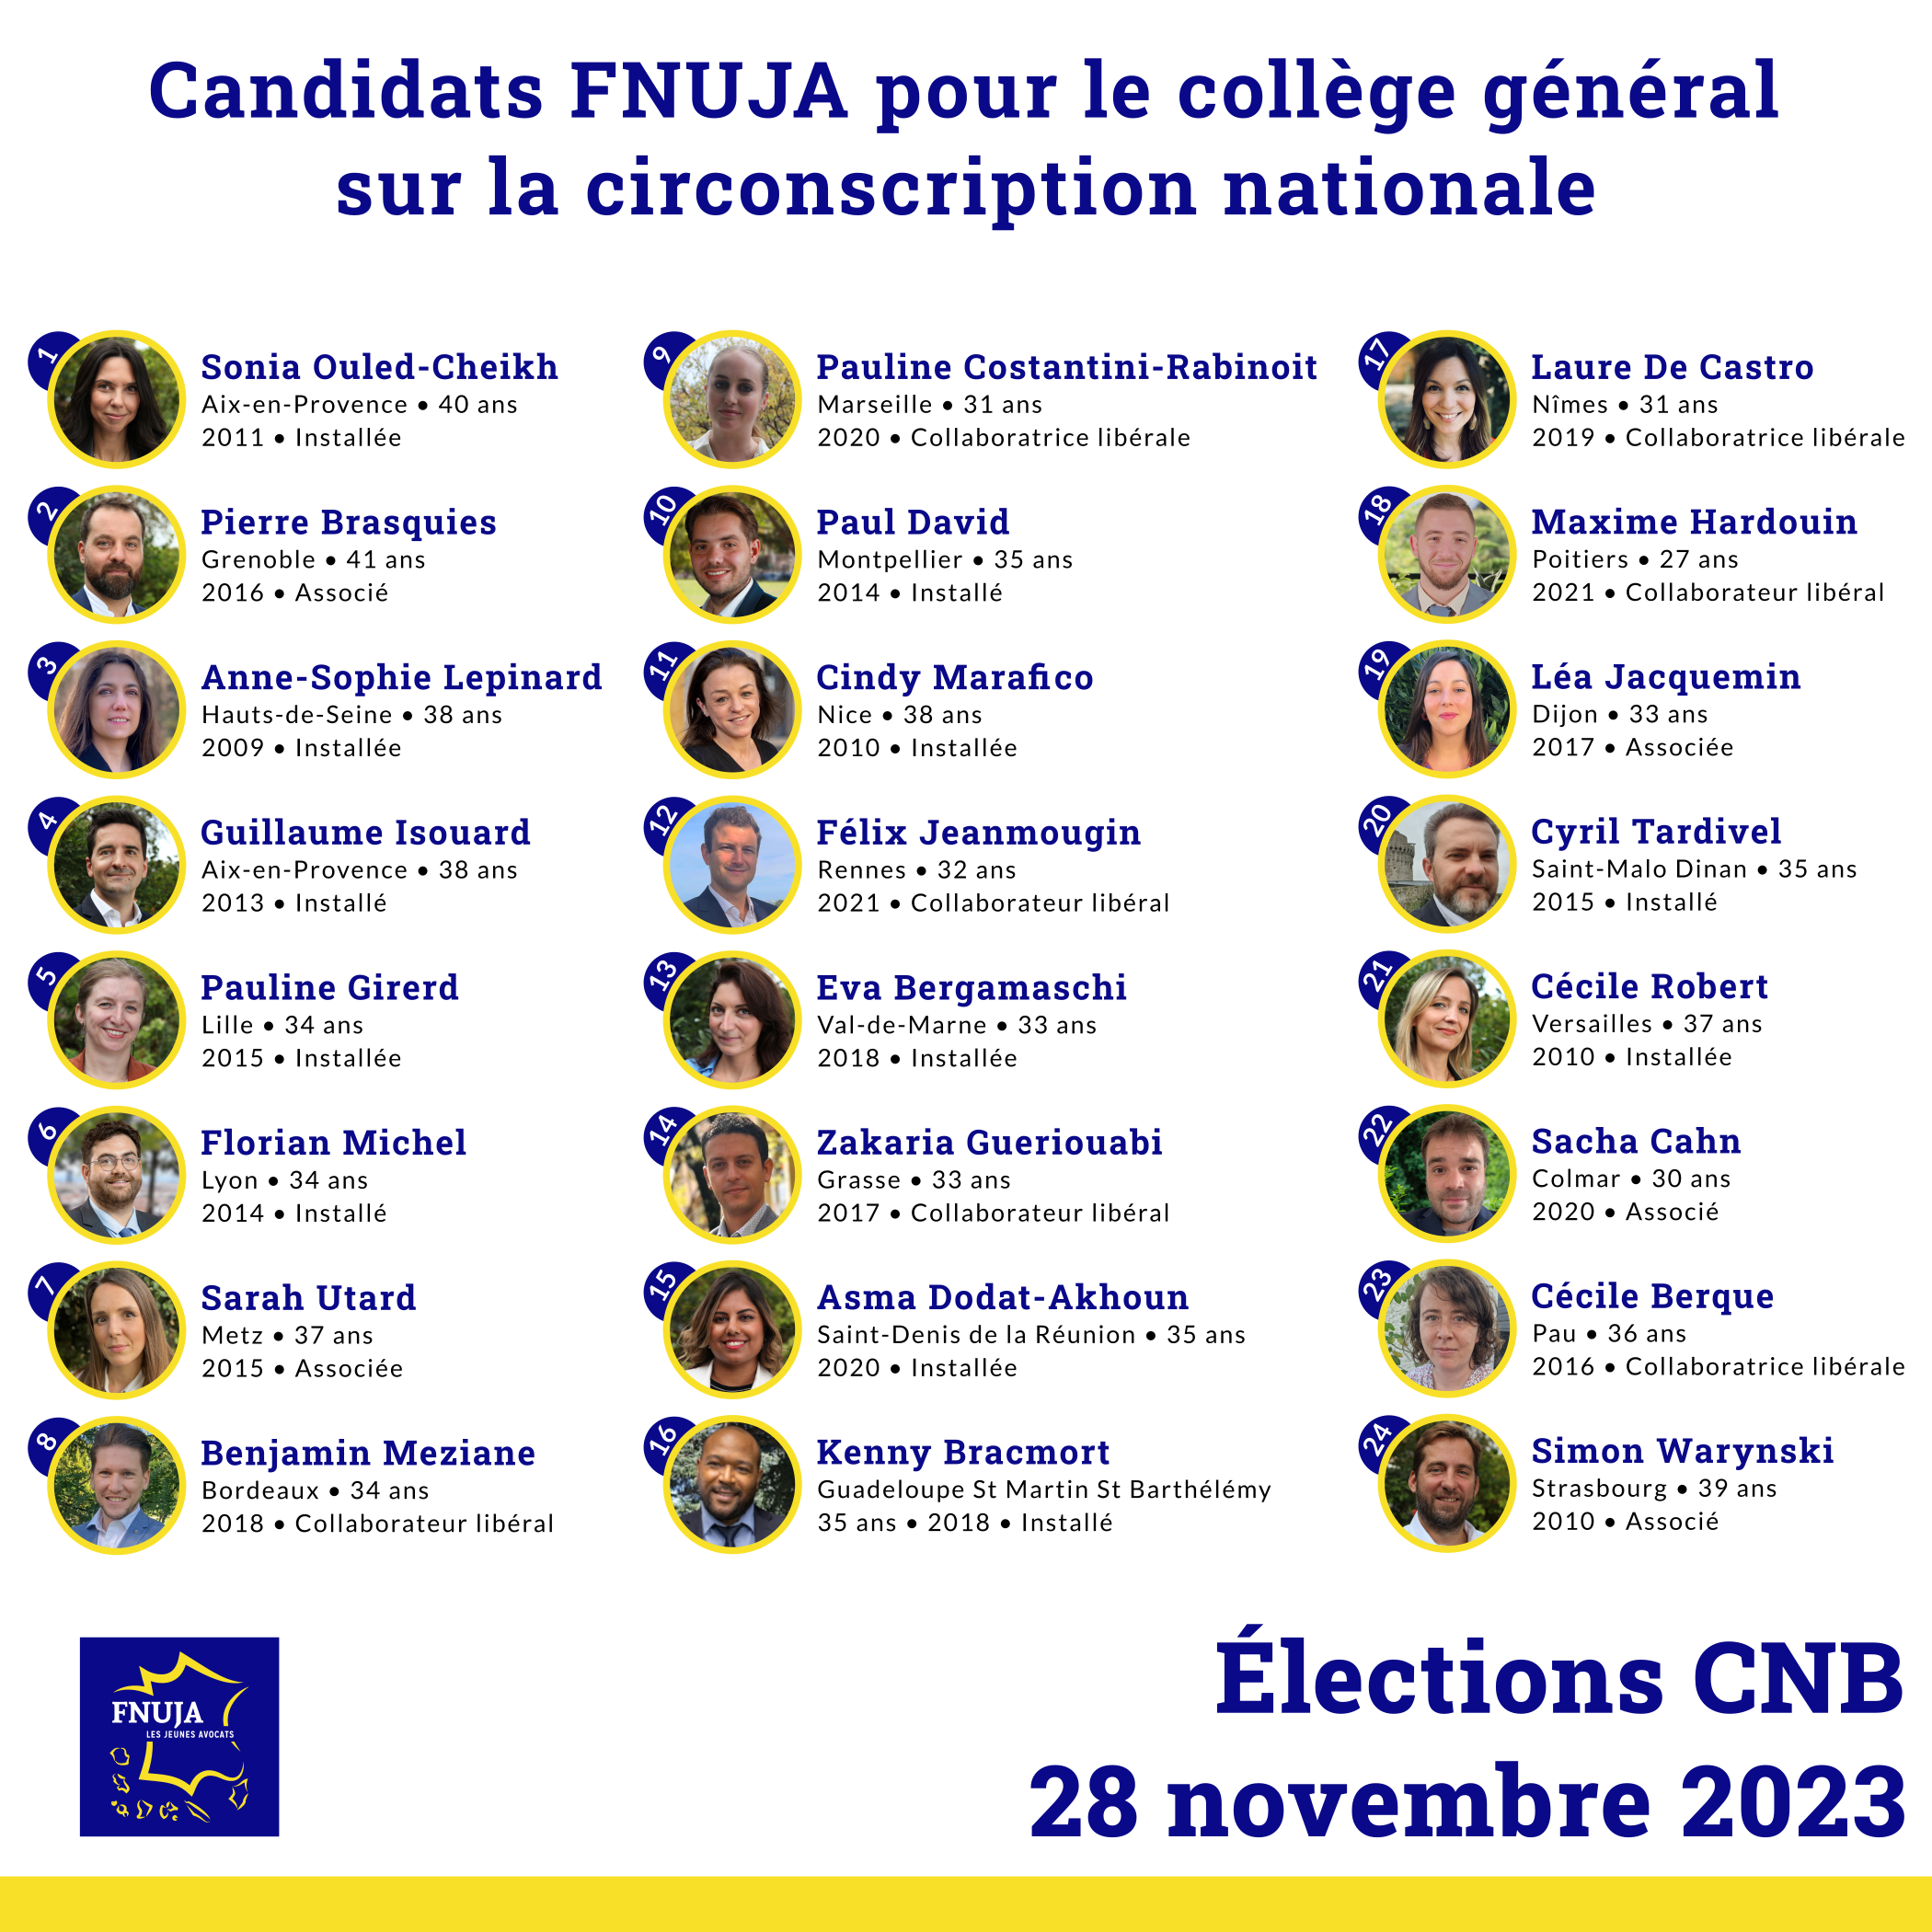 Présentation des candidats FNUJA de la circonscription nationale hors Paris - Élections CNB 2023